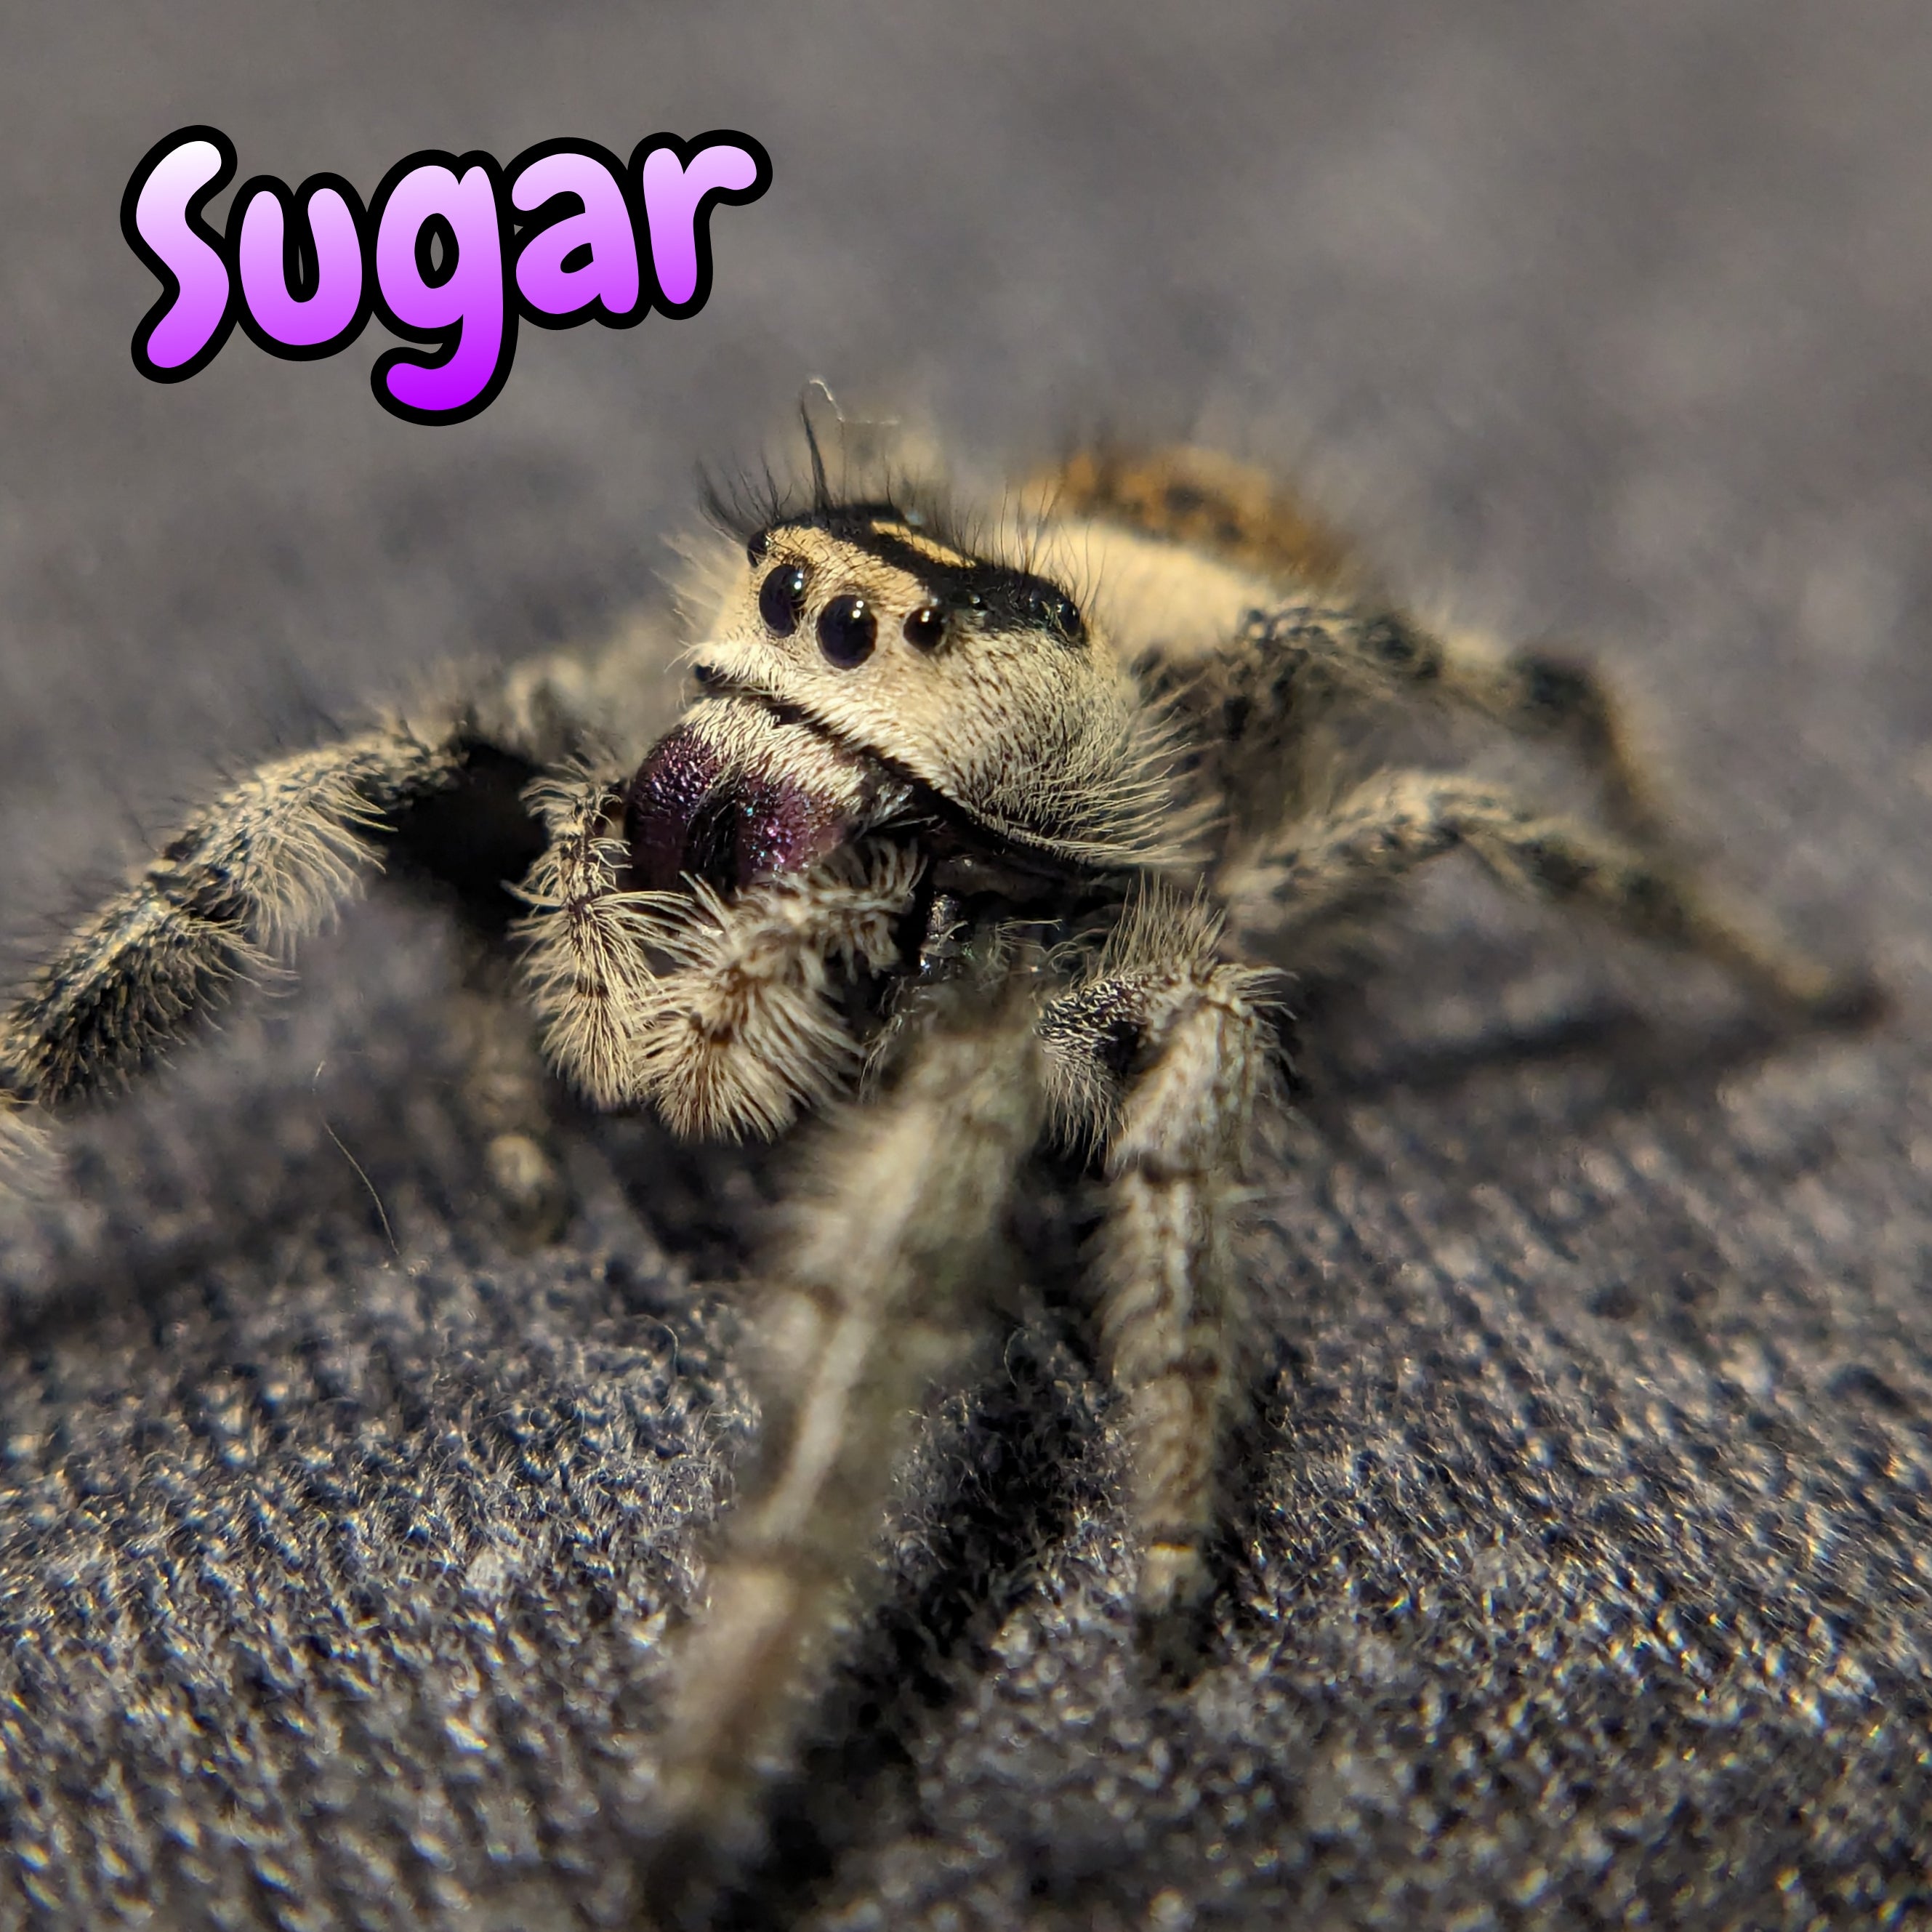 Regal Jumping Spider "Sugar"